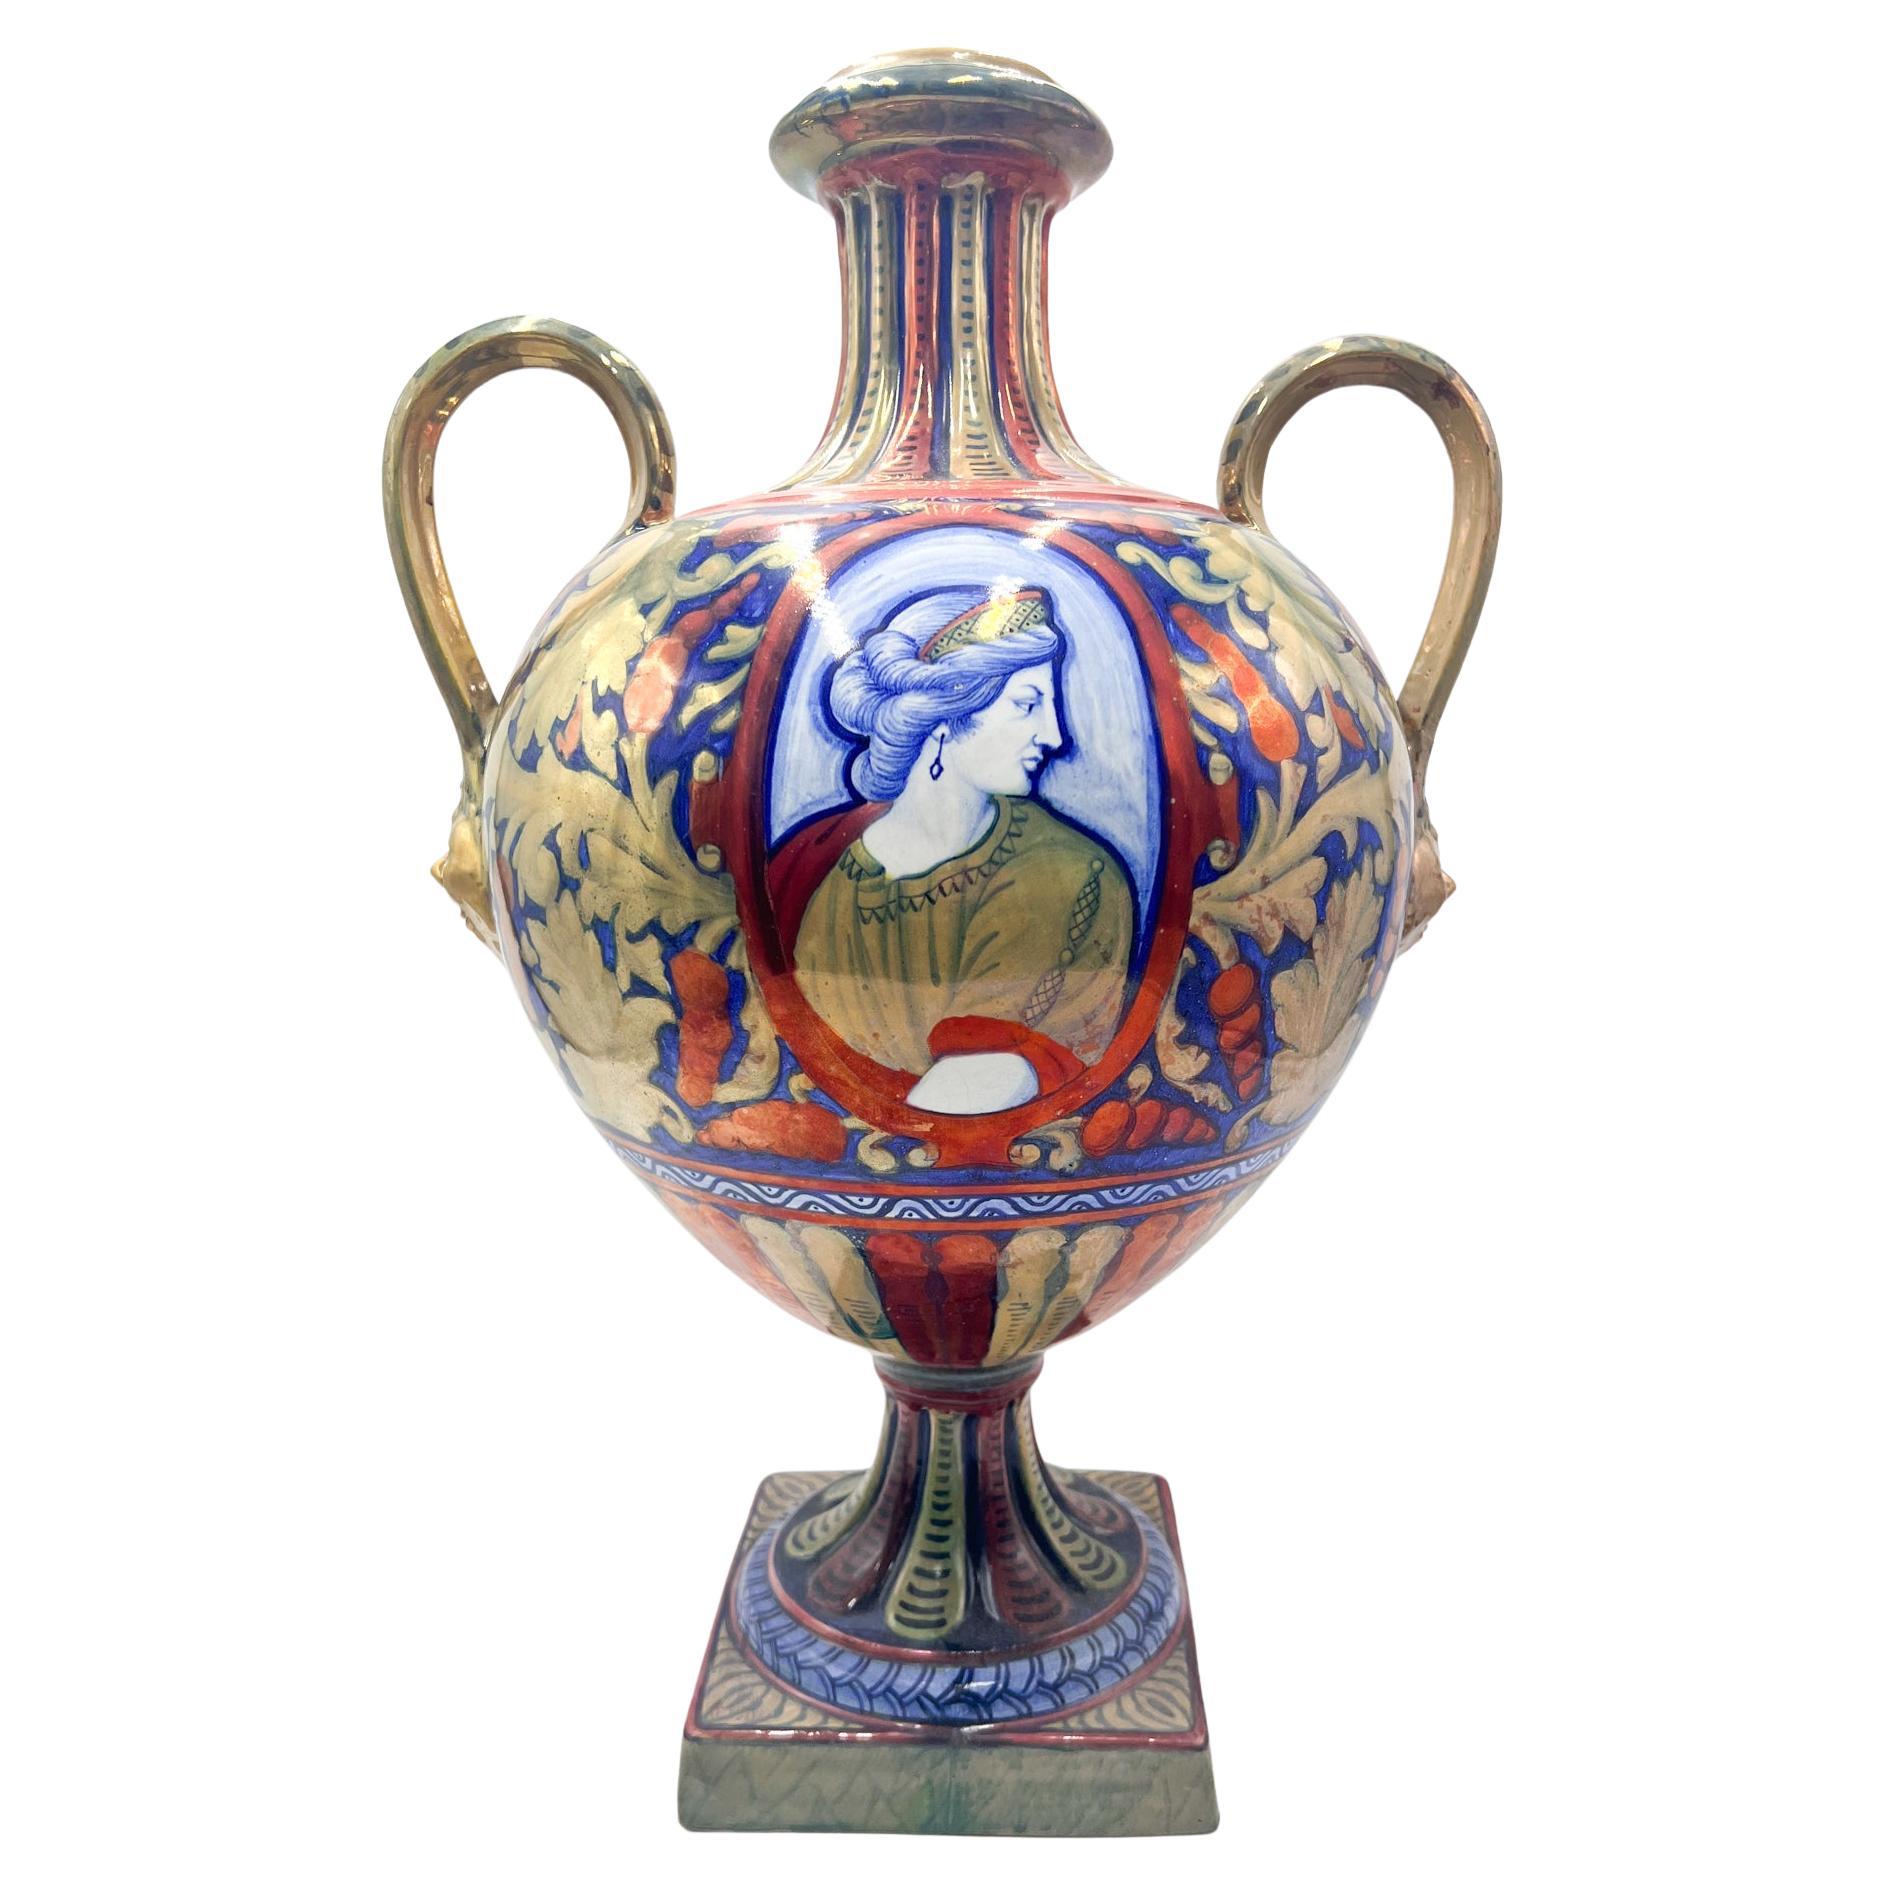 Early 20th Century Ceramic Vase by Gualdo Tadino